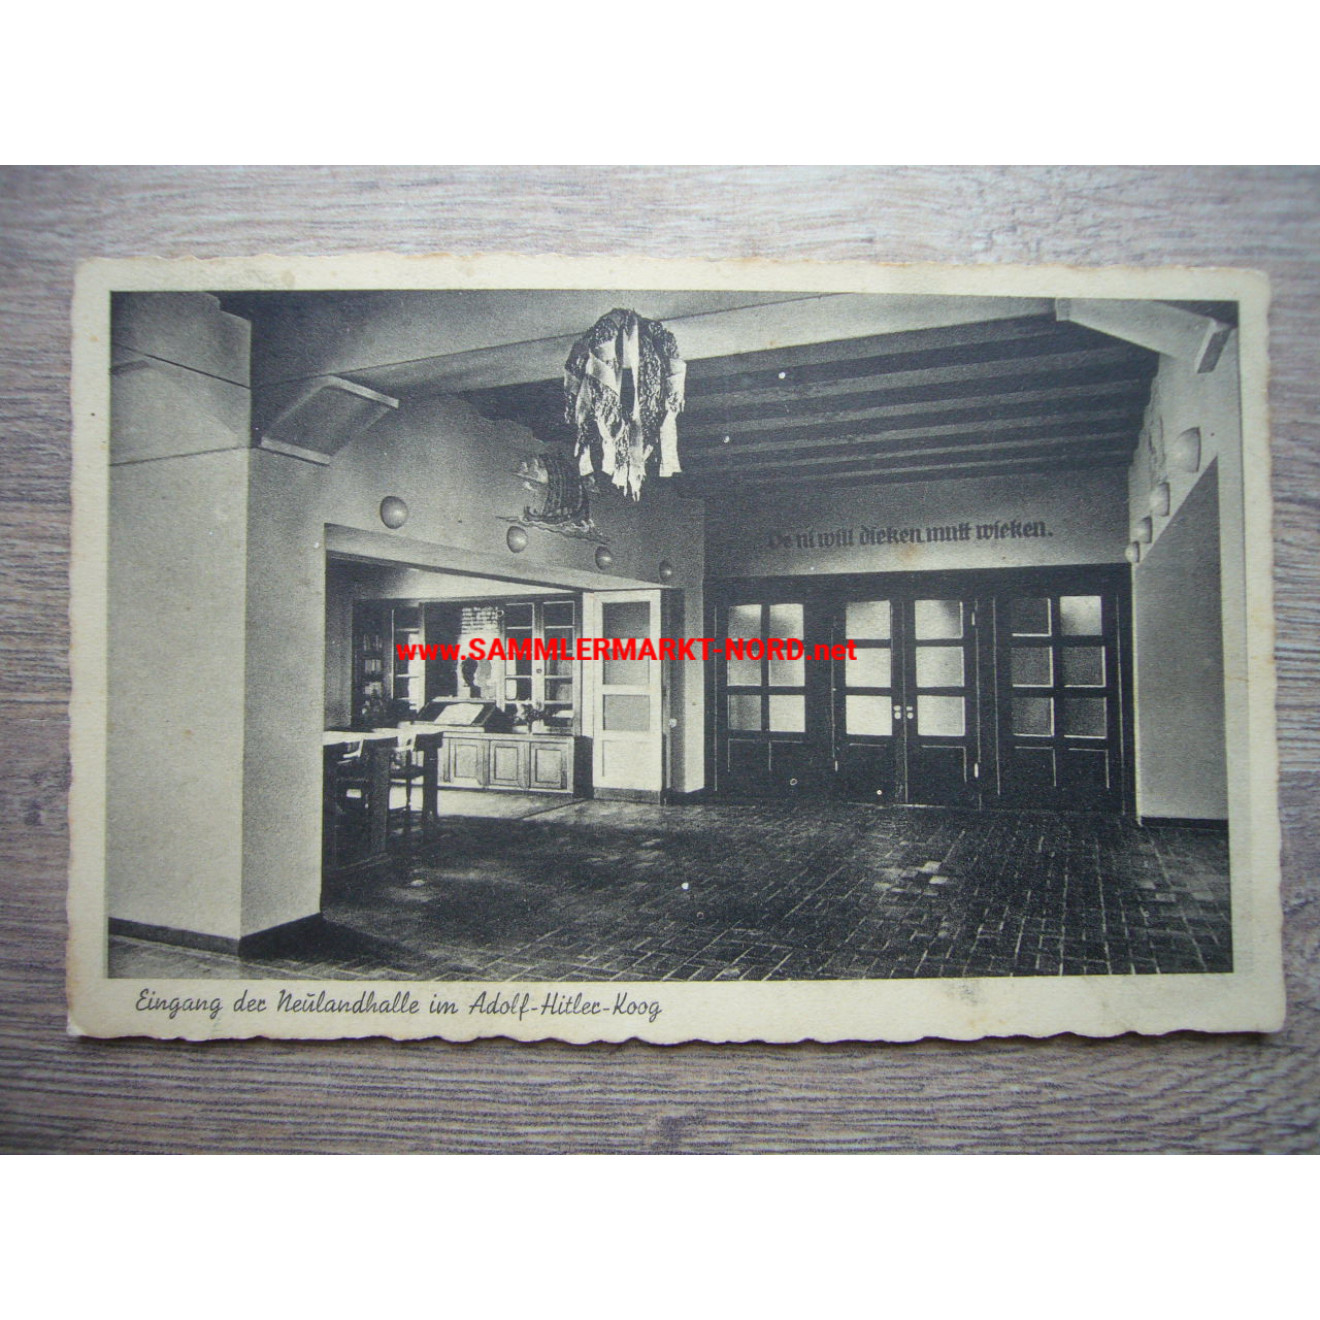 Eingang der Neulandhalle - Adolf Hitler Koog - Postkarte